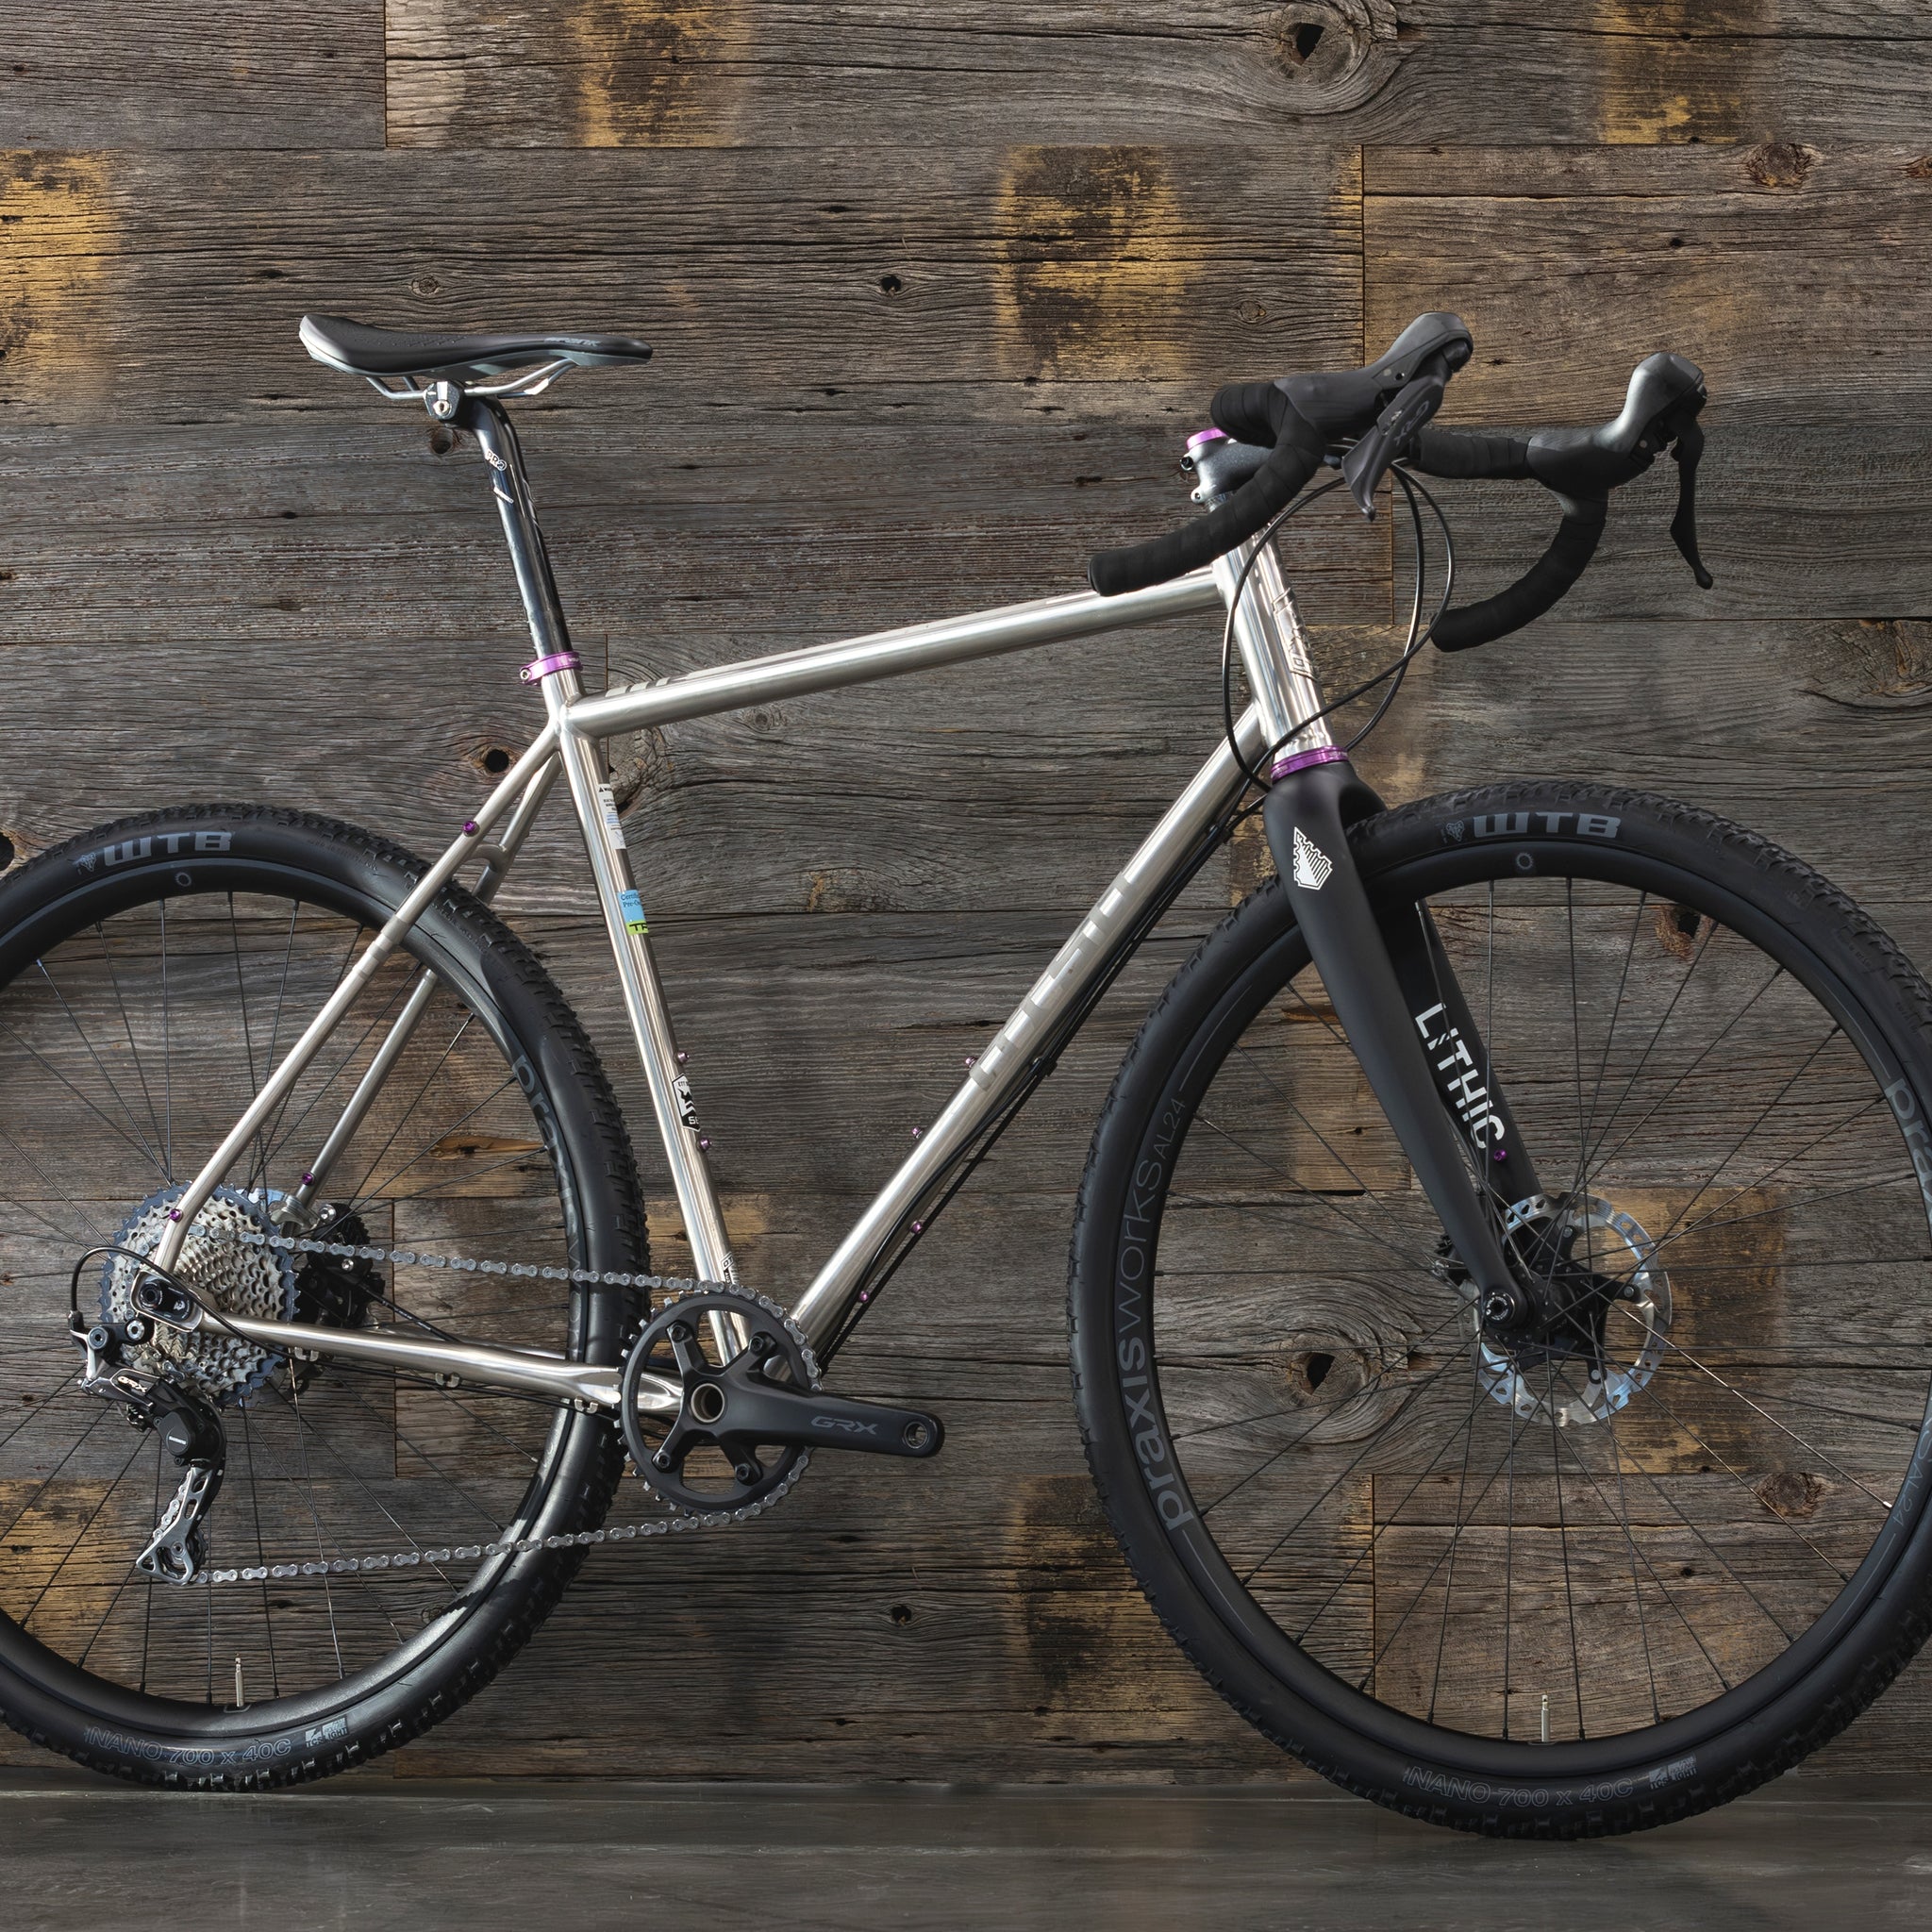 The Stainless Steel Otso Warakin Is a Rare Breed of Bike